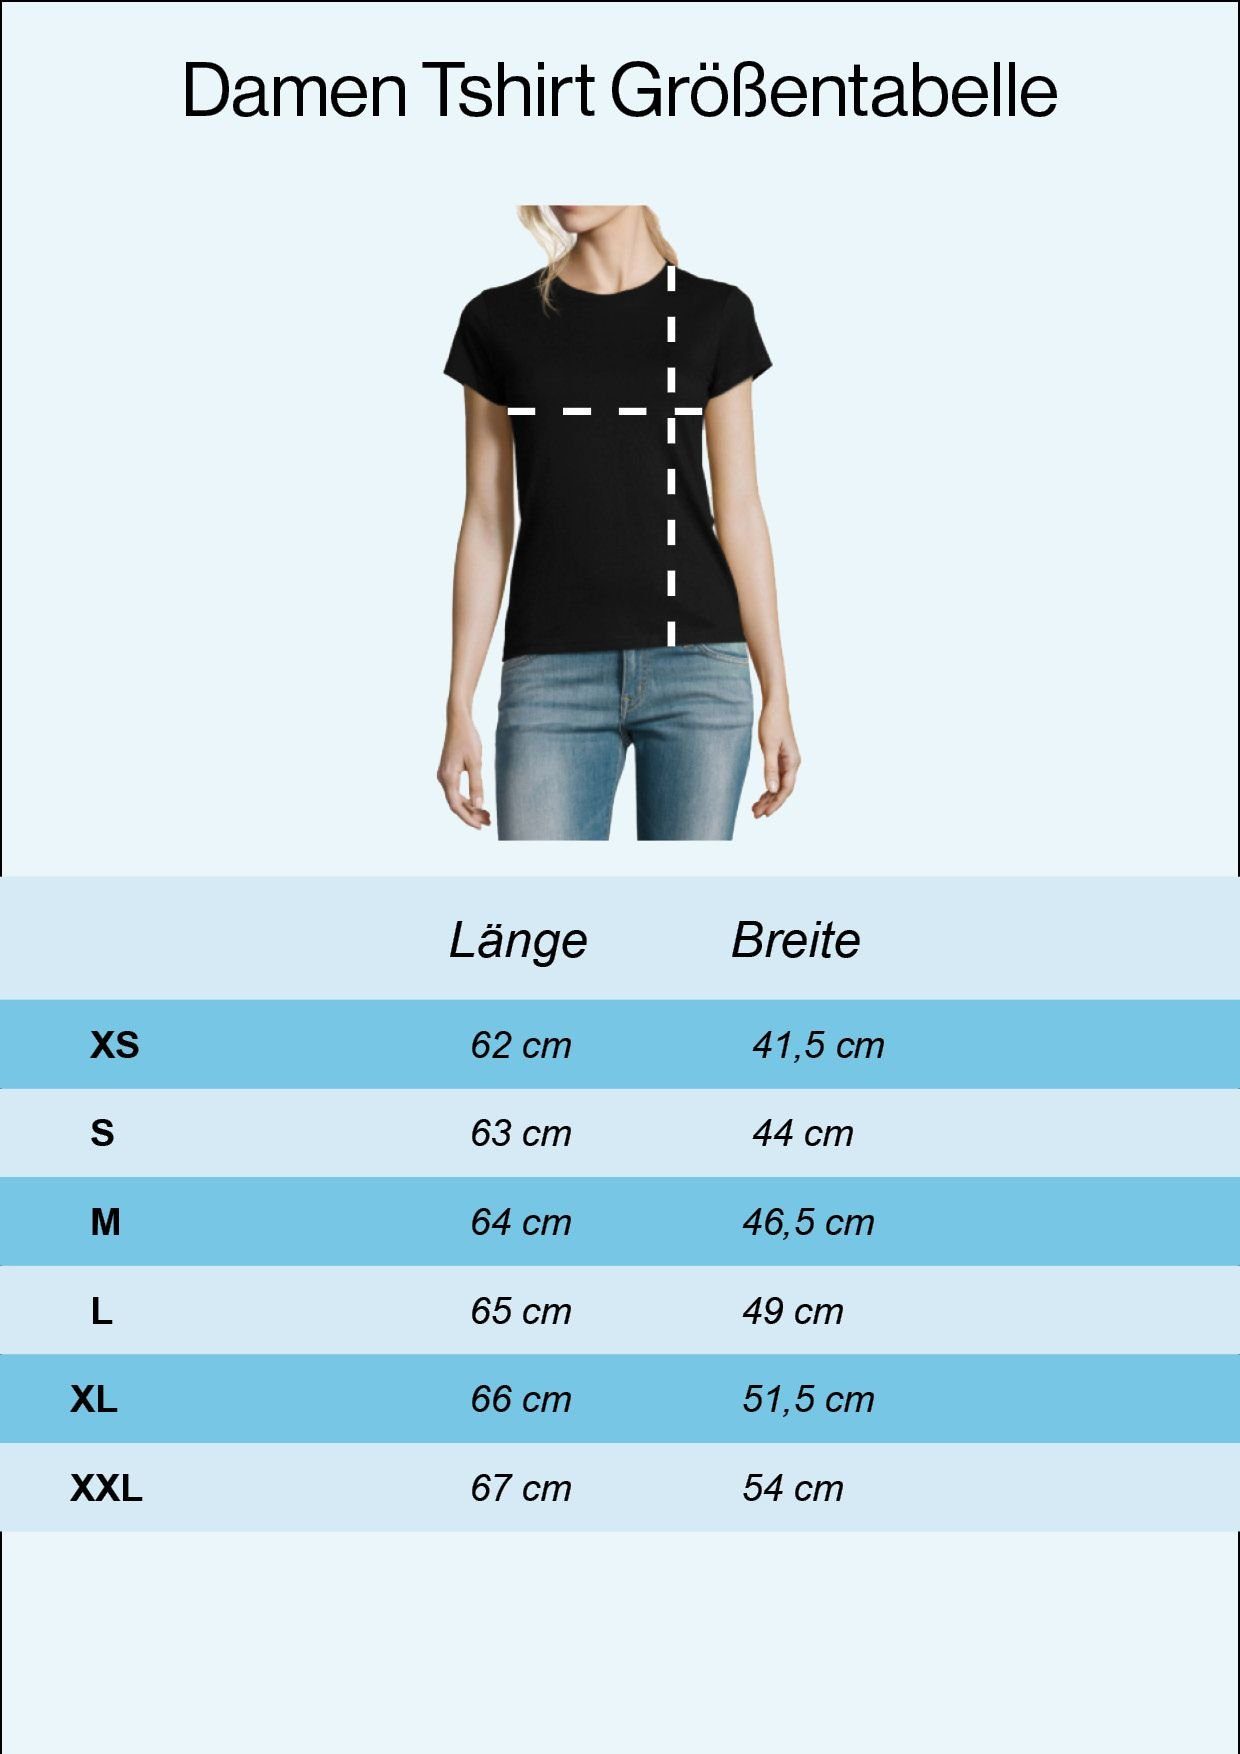 Aufgeben Damen Wandern Designz Frontprint T-Shirt Weiss T-Shirt mit trendigem Nicht Youth